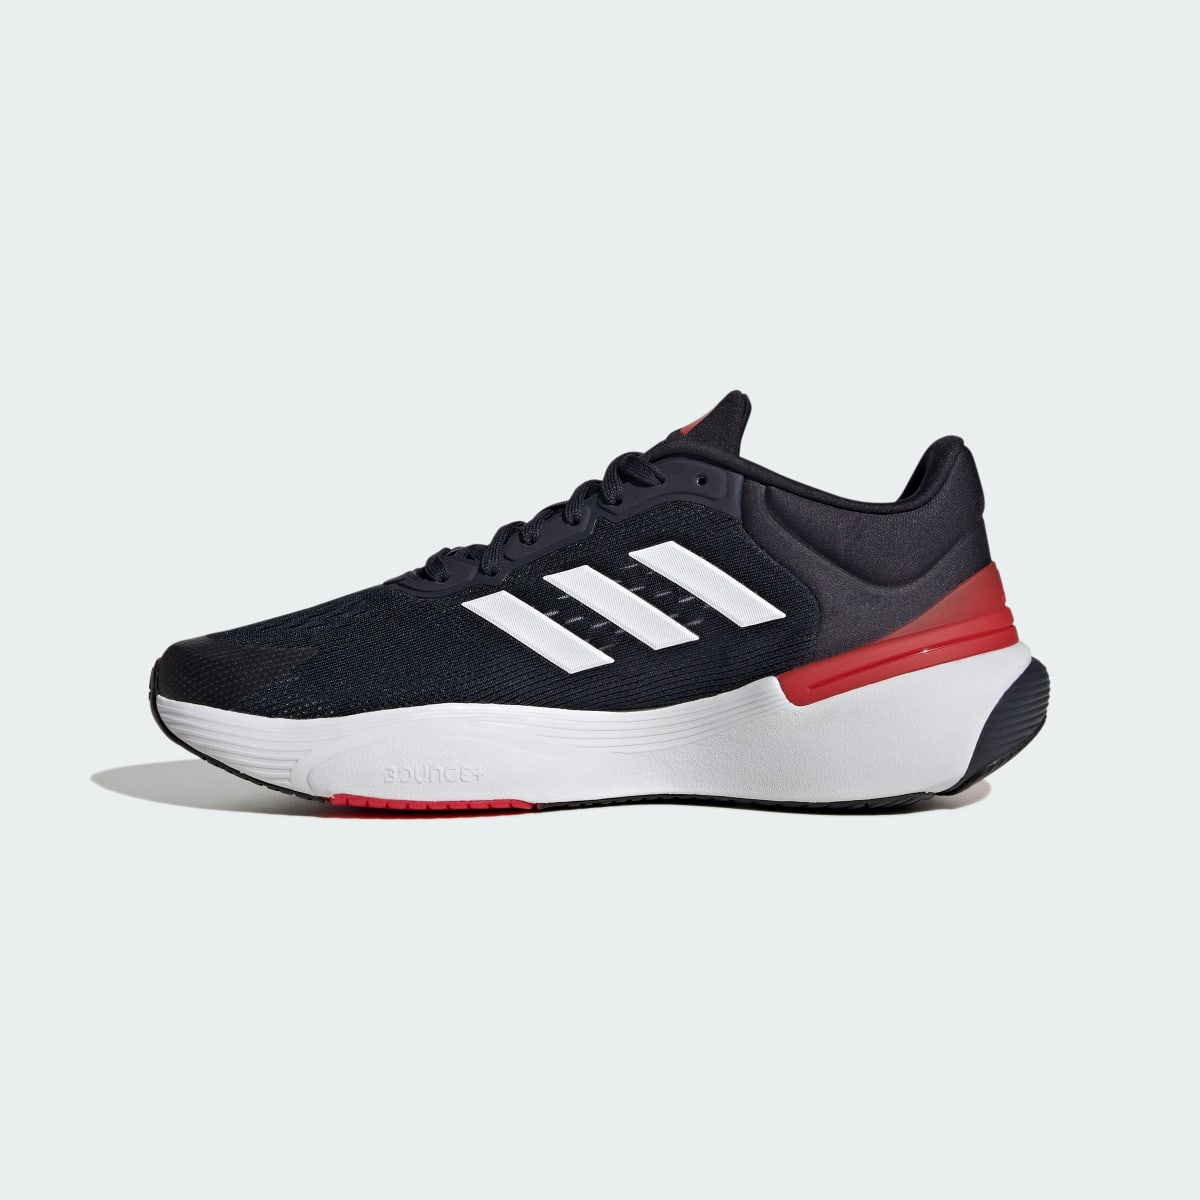 Adidas Response Super 2.0 Ayakkabı. 7